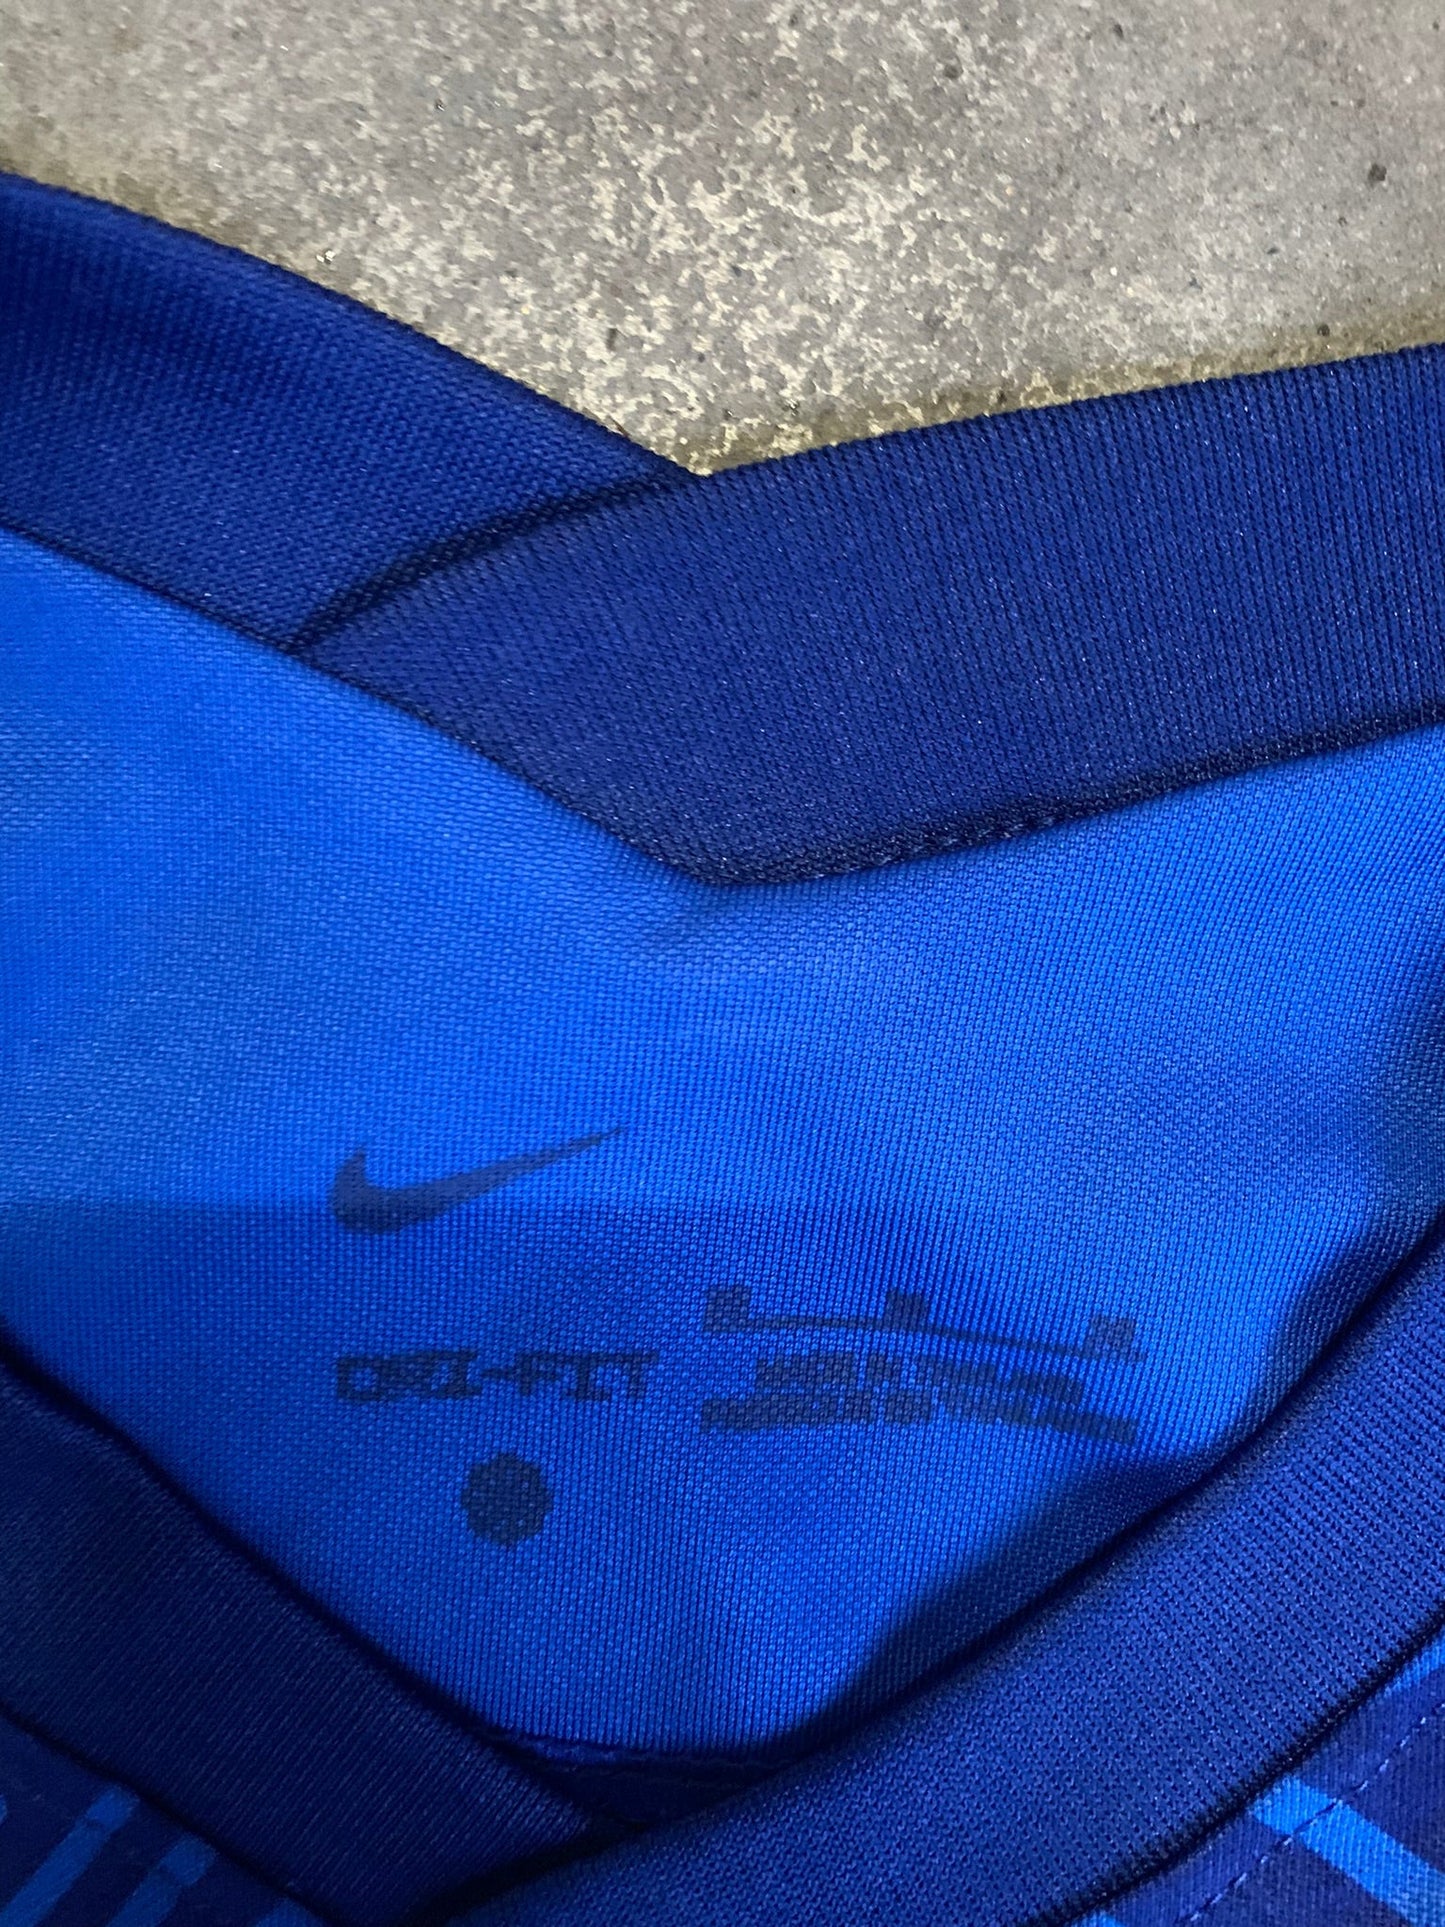 (S/M) Nike Chelsea Kit